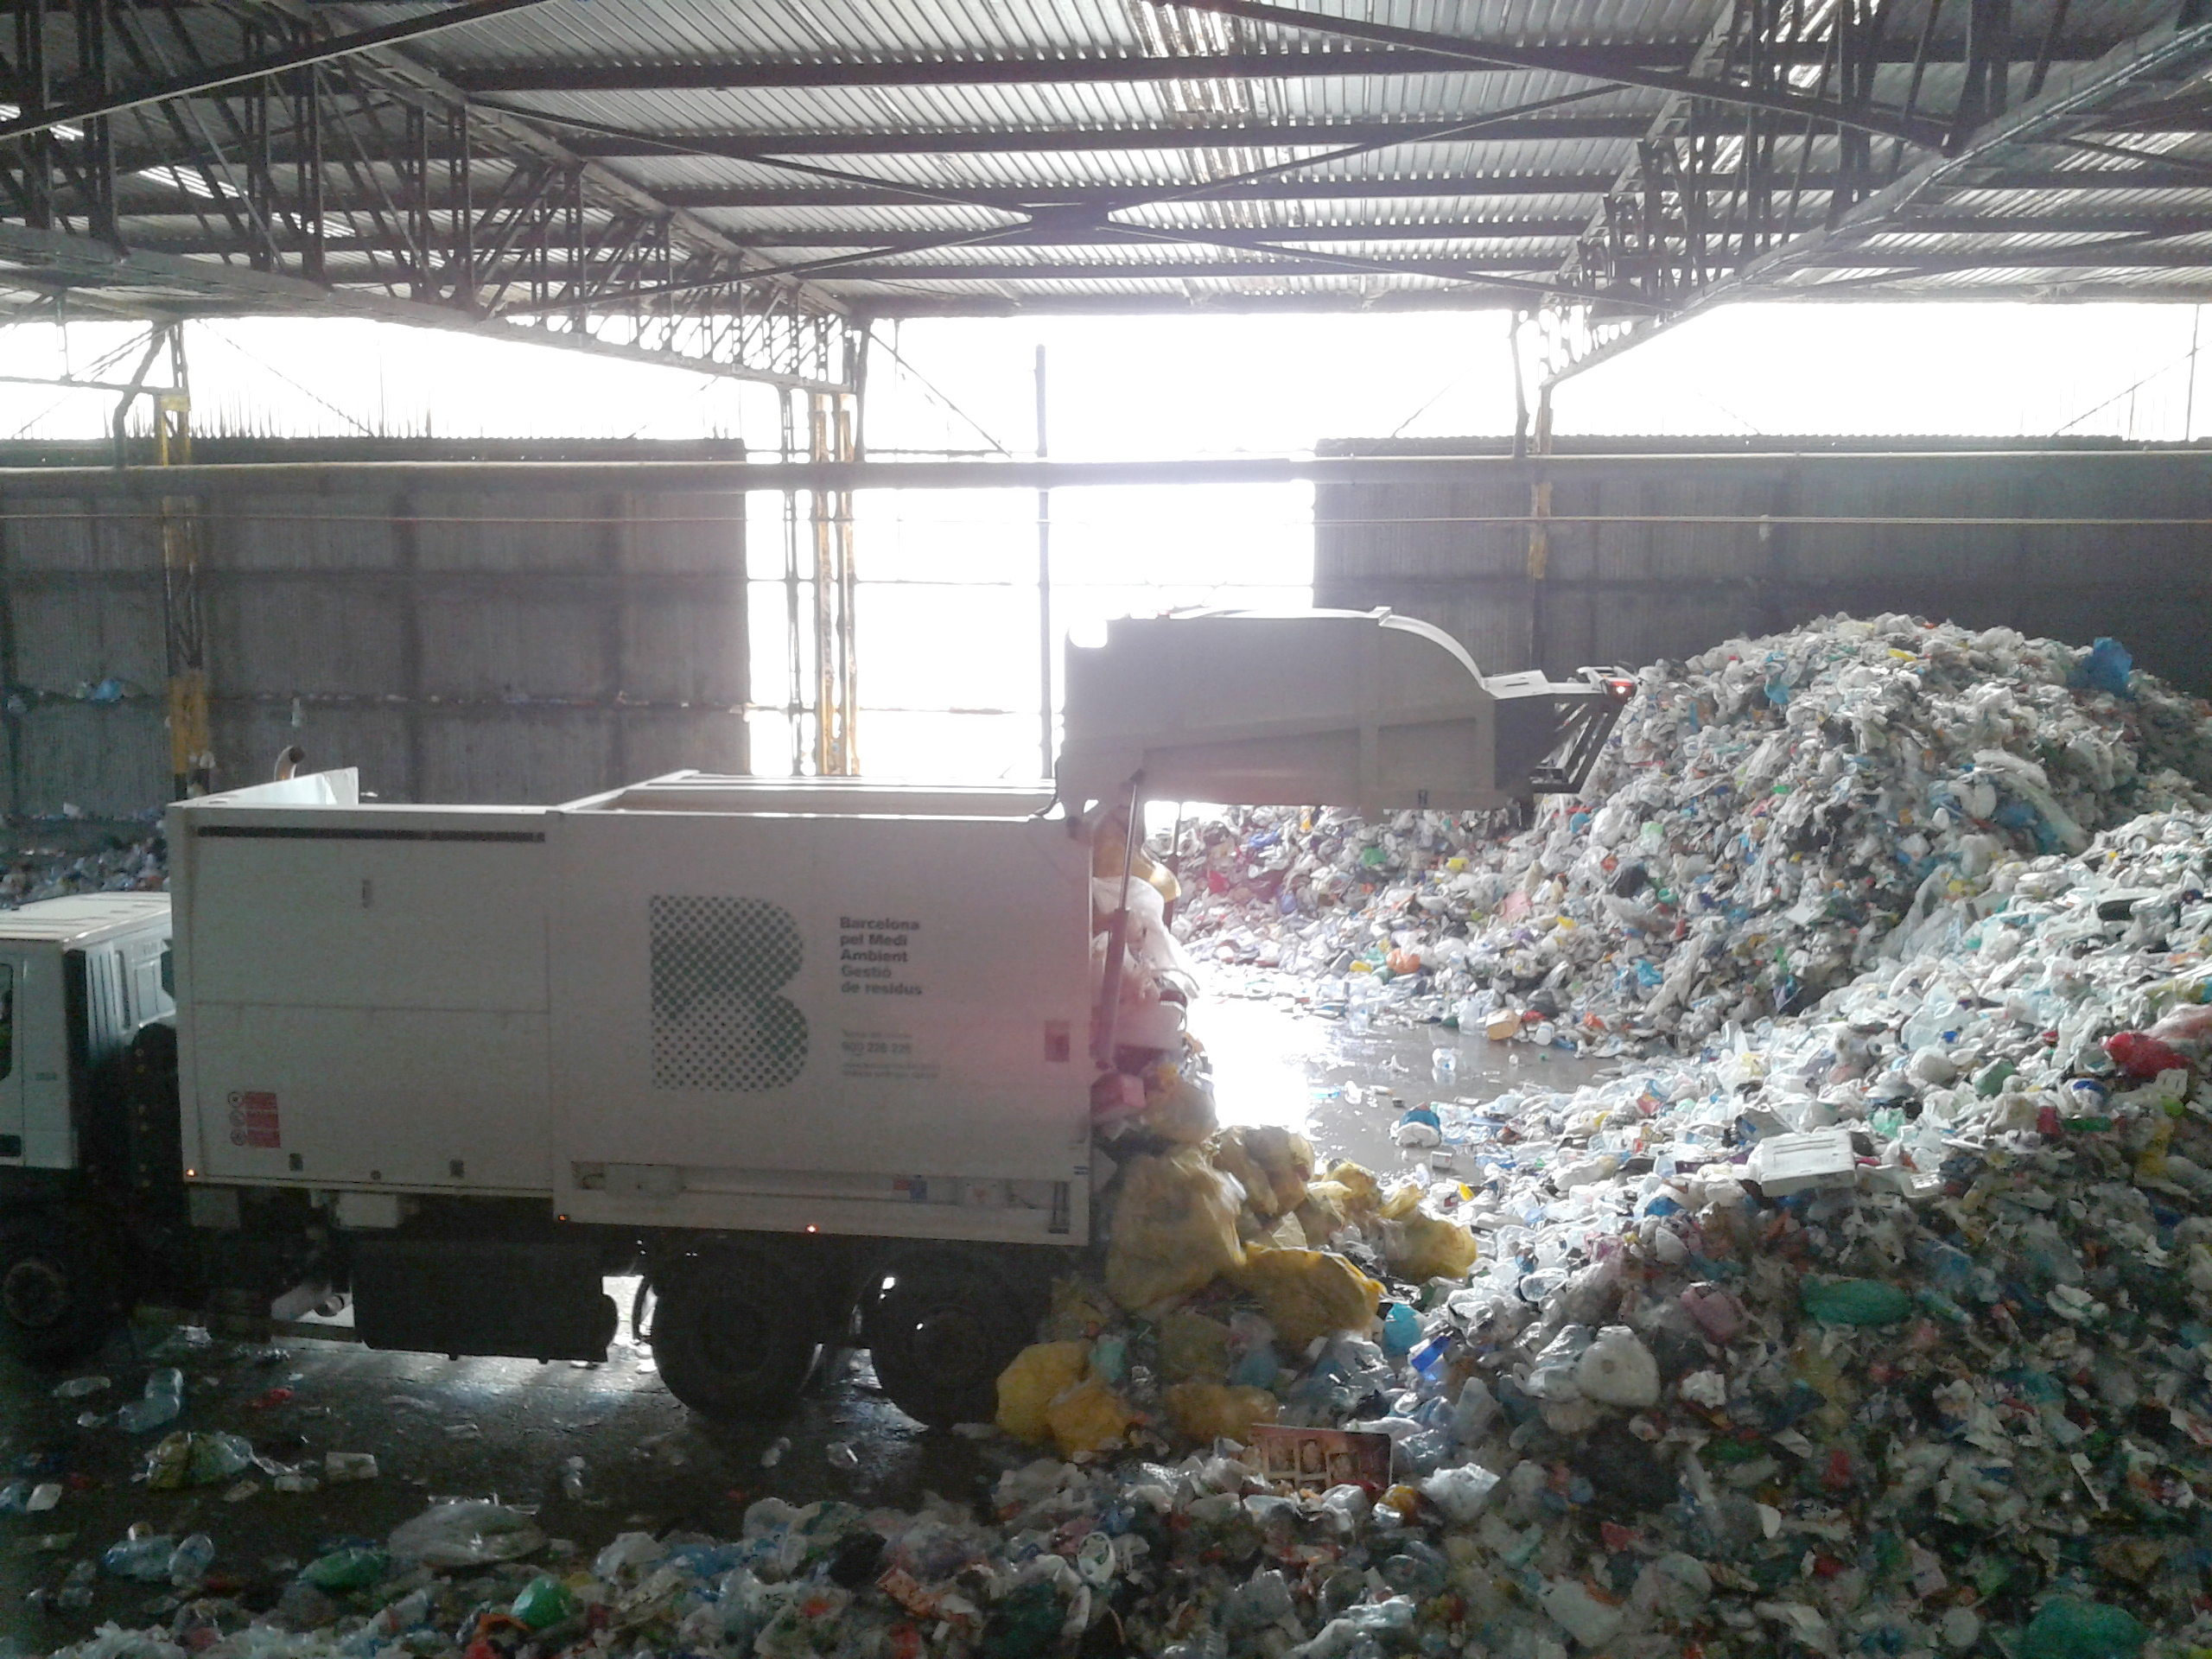 Centre de tractament de residus municipals de Gavà Viladecans